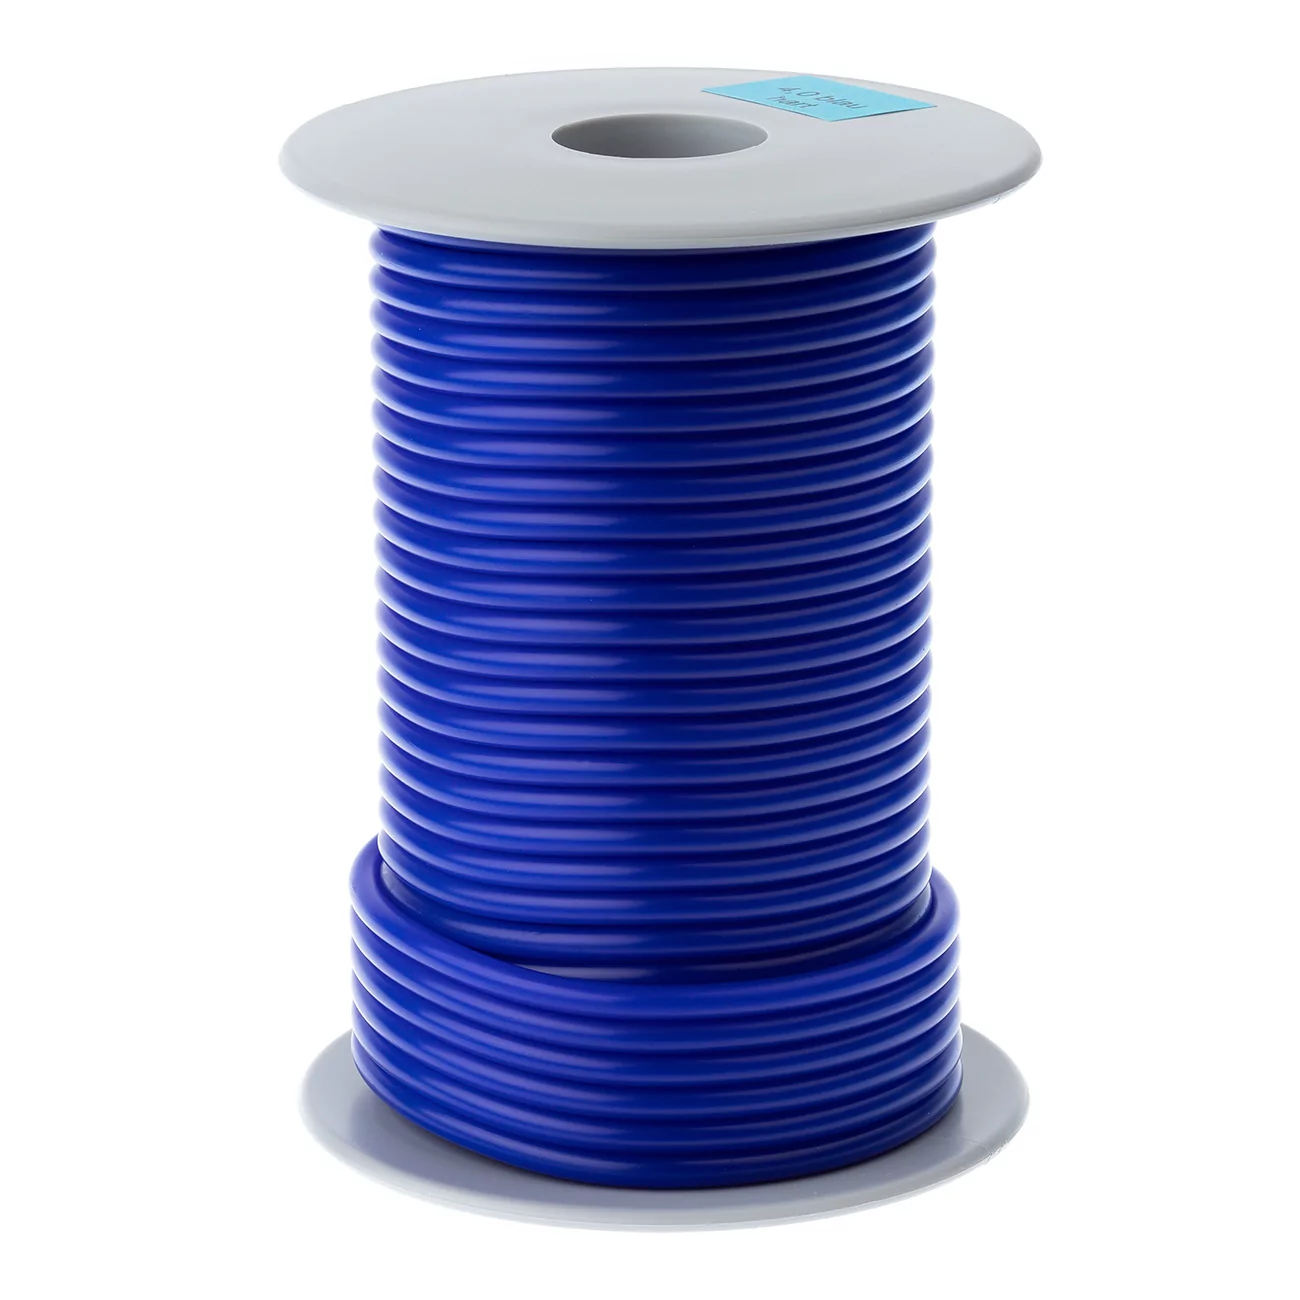 Восковая проволока S-U-WACHSDRAHT, синяя, твердая, 4,0 мм, катушка 250 г, 62740029